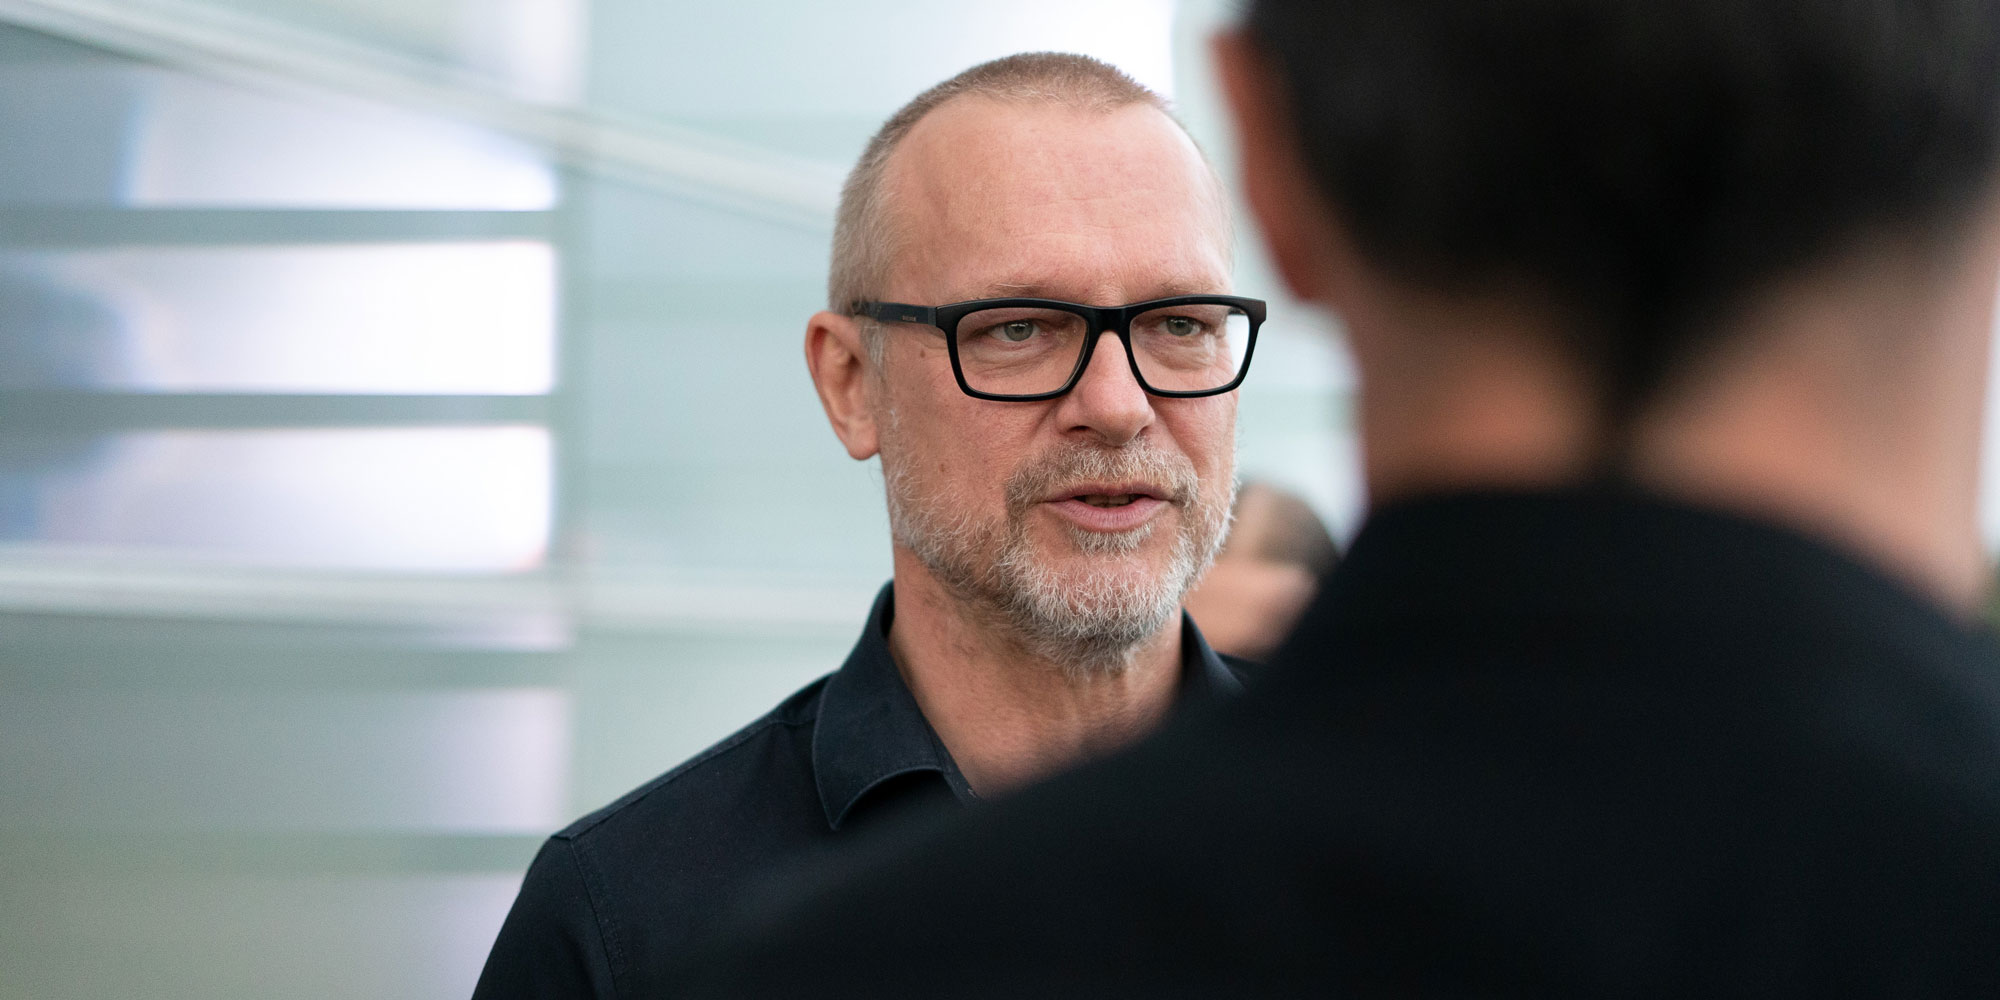 Das internationale Team des Labors feiert 25 Jahre Ars Electronica Futurelab: Horst Hörtner, Managing Director